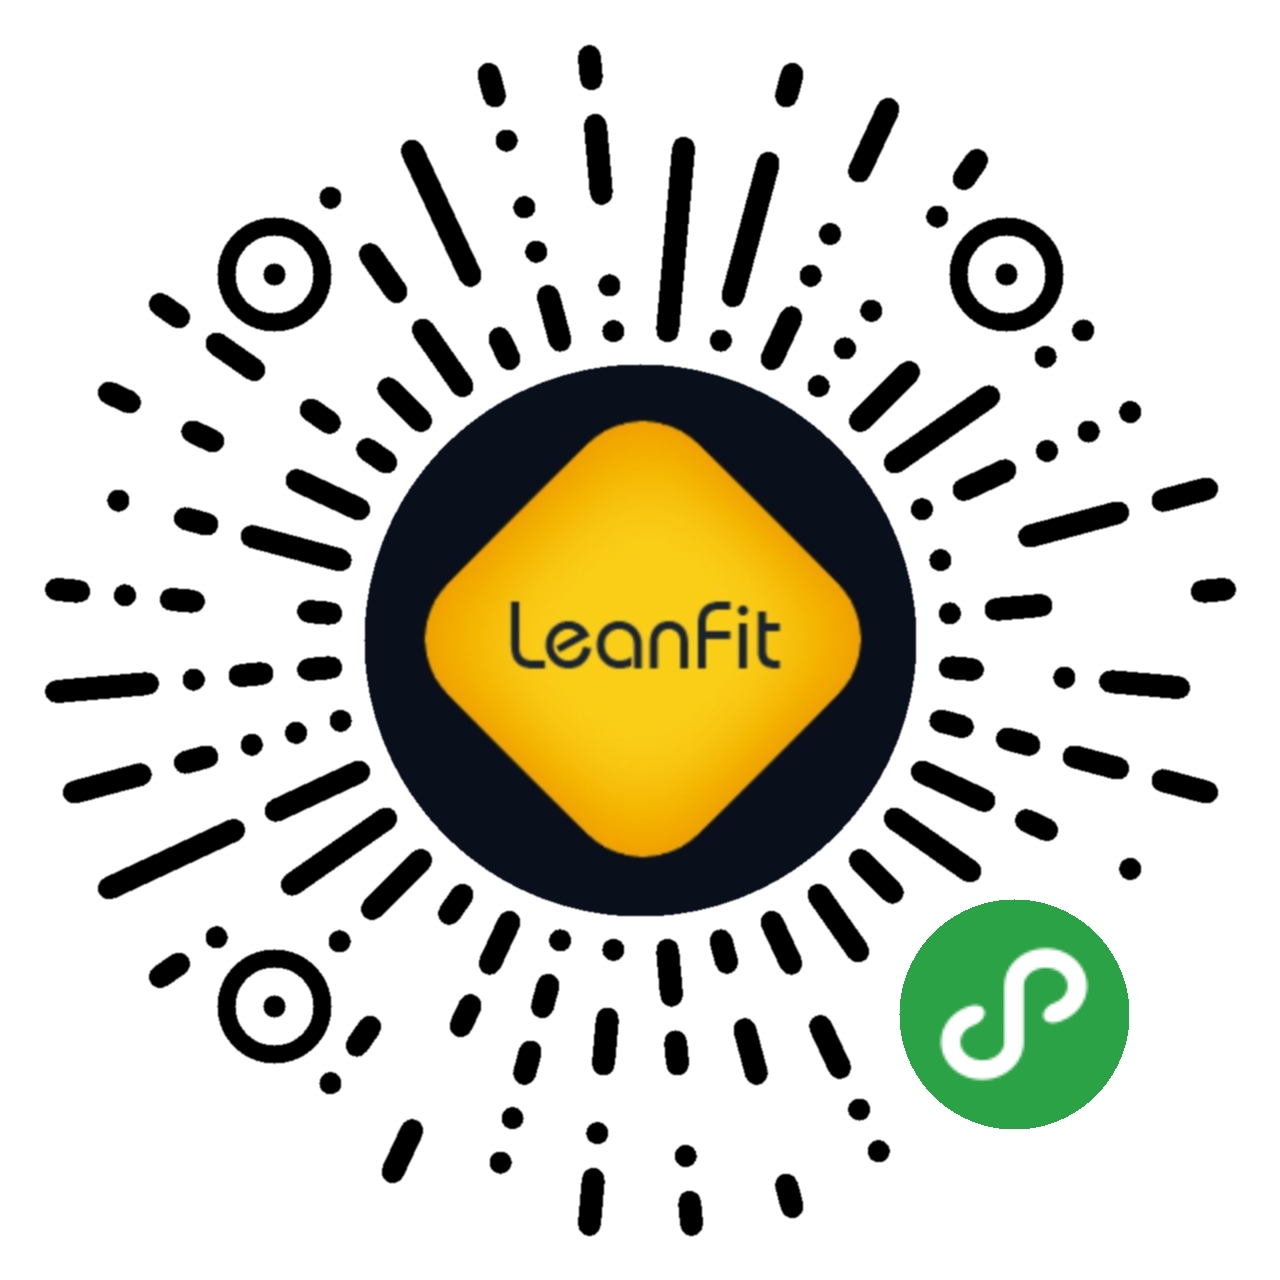 leanfit健身名片_leanfit健身名片小程序_leanfit健身名片微信小程序